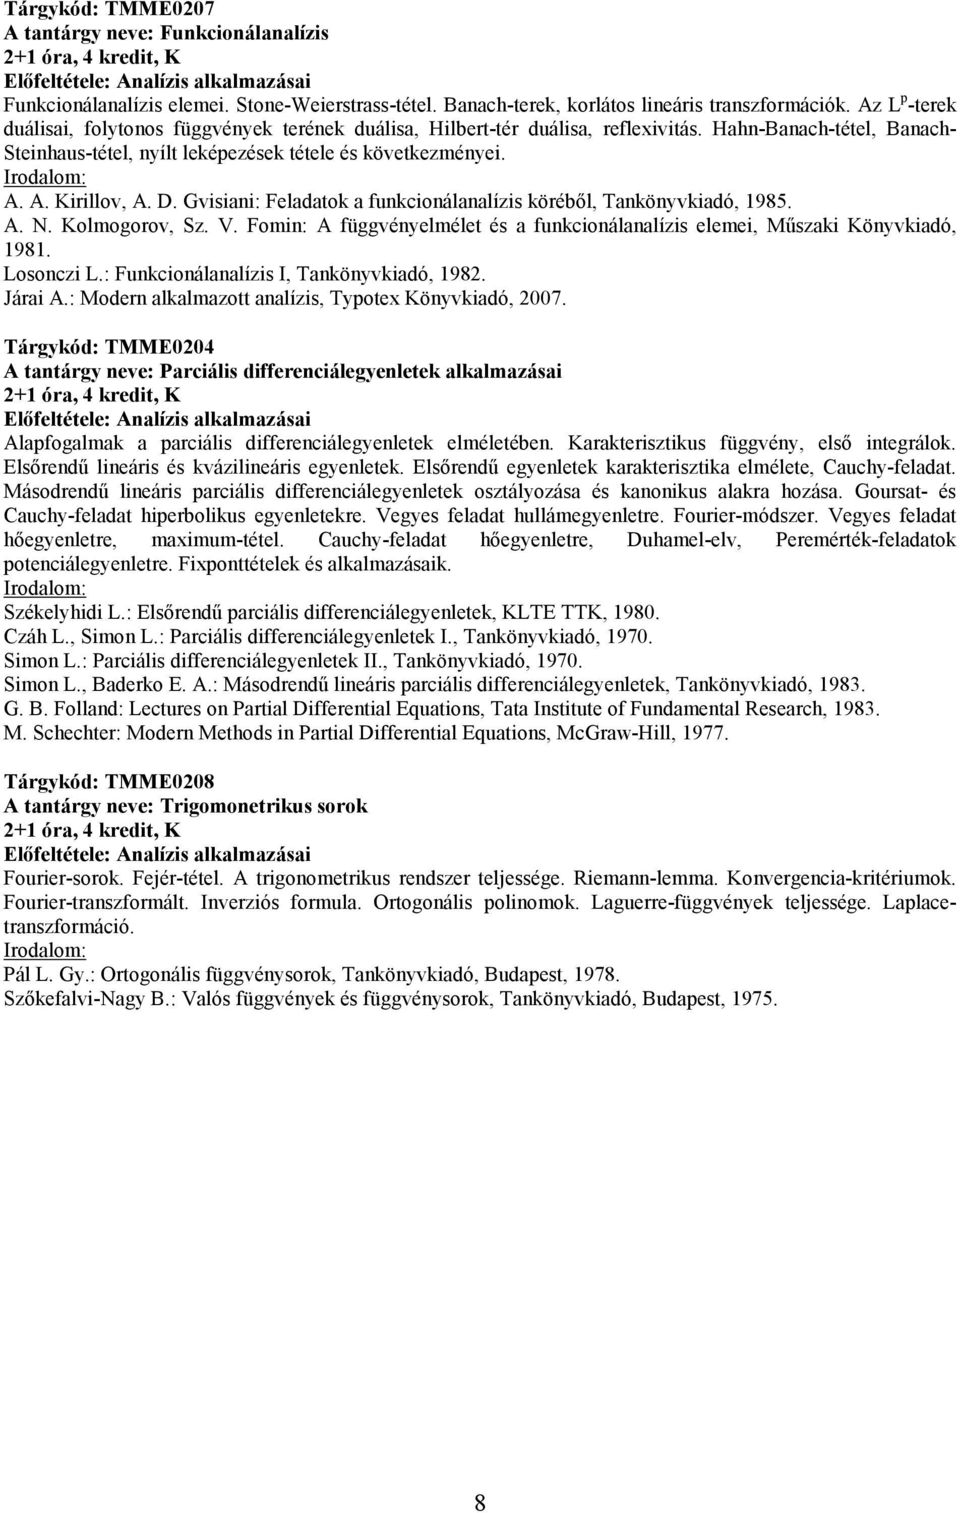 D. Gvisiani: Feladatok a funkcionálanalízis körébıl, Tankönyvkiadó, 1985. A. N. Kolmogorov, Sz. V. Fomin: A függvényelmélet és a funkcionálanalízis elemei, Mőszaki Könyvkiadó, 1981. Losonczi L.